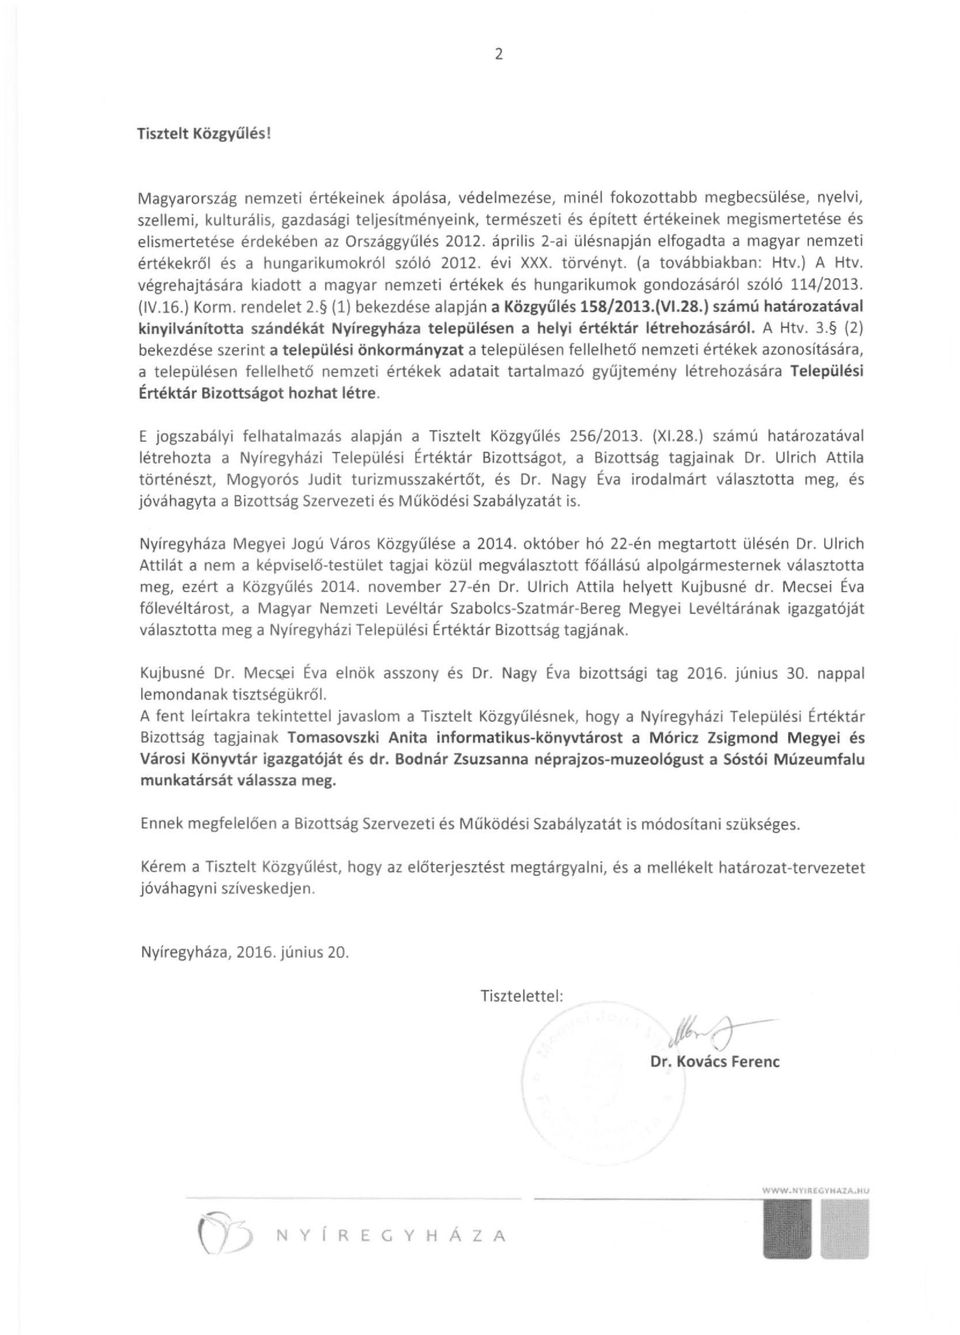 elismertetése érdekében az Országgyűlés 2012. április 2-ai ülésnapján elfogadta a magyar nemzeti értékekről és a hungarikumokról szóló 2012. évi xxx. törvényt. (a továbbiakban: Htv.) A Htv.